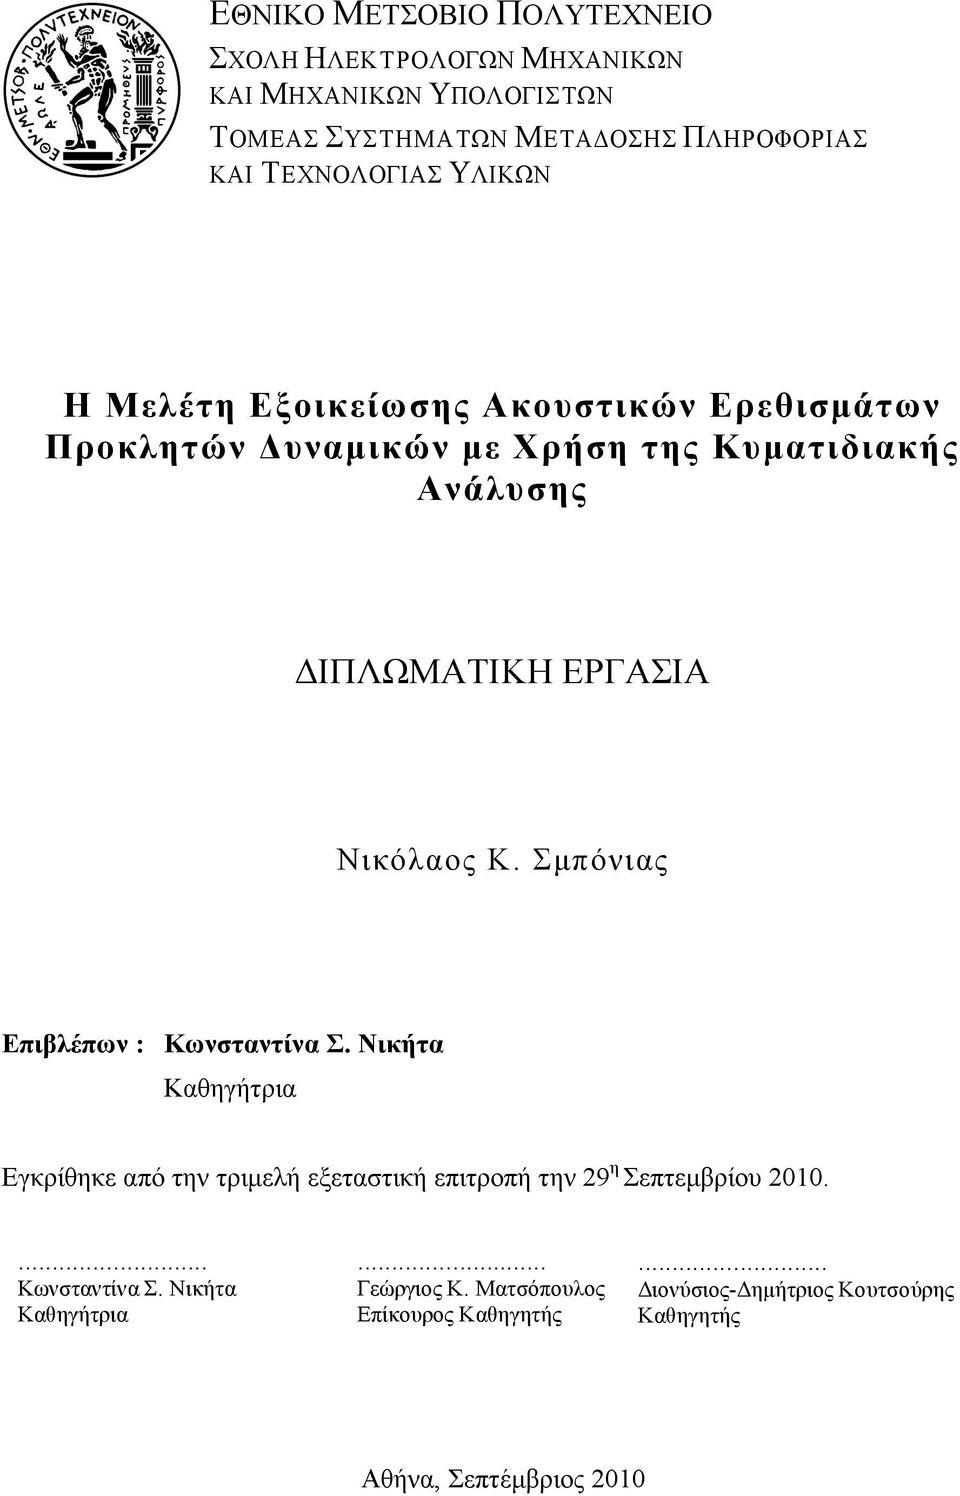 Σµπόνιας Επιβλέπων : Κωνσταντίνα Σ. Νικήτα Καθηγήτρια Εγκρίθηκε από την τριµελή εξεταστική επιτροπή την 29 η Σεπτεµβρίου 2010.